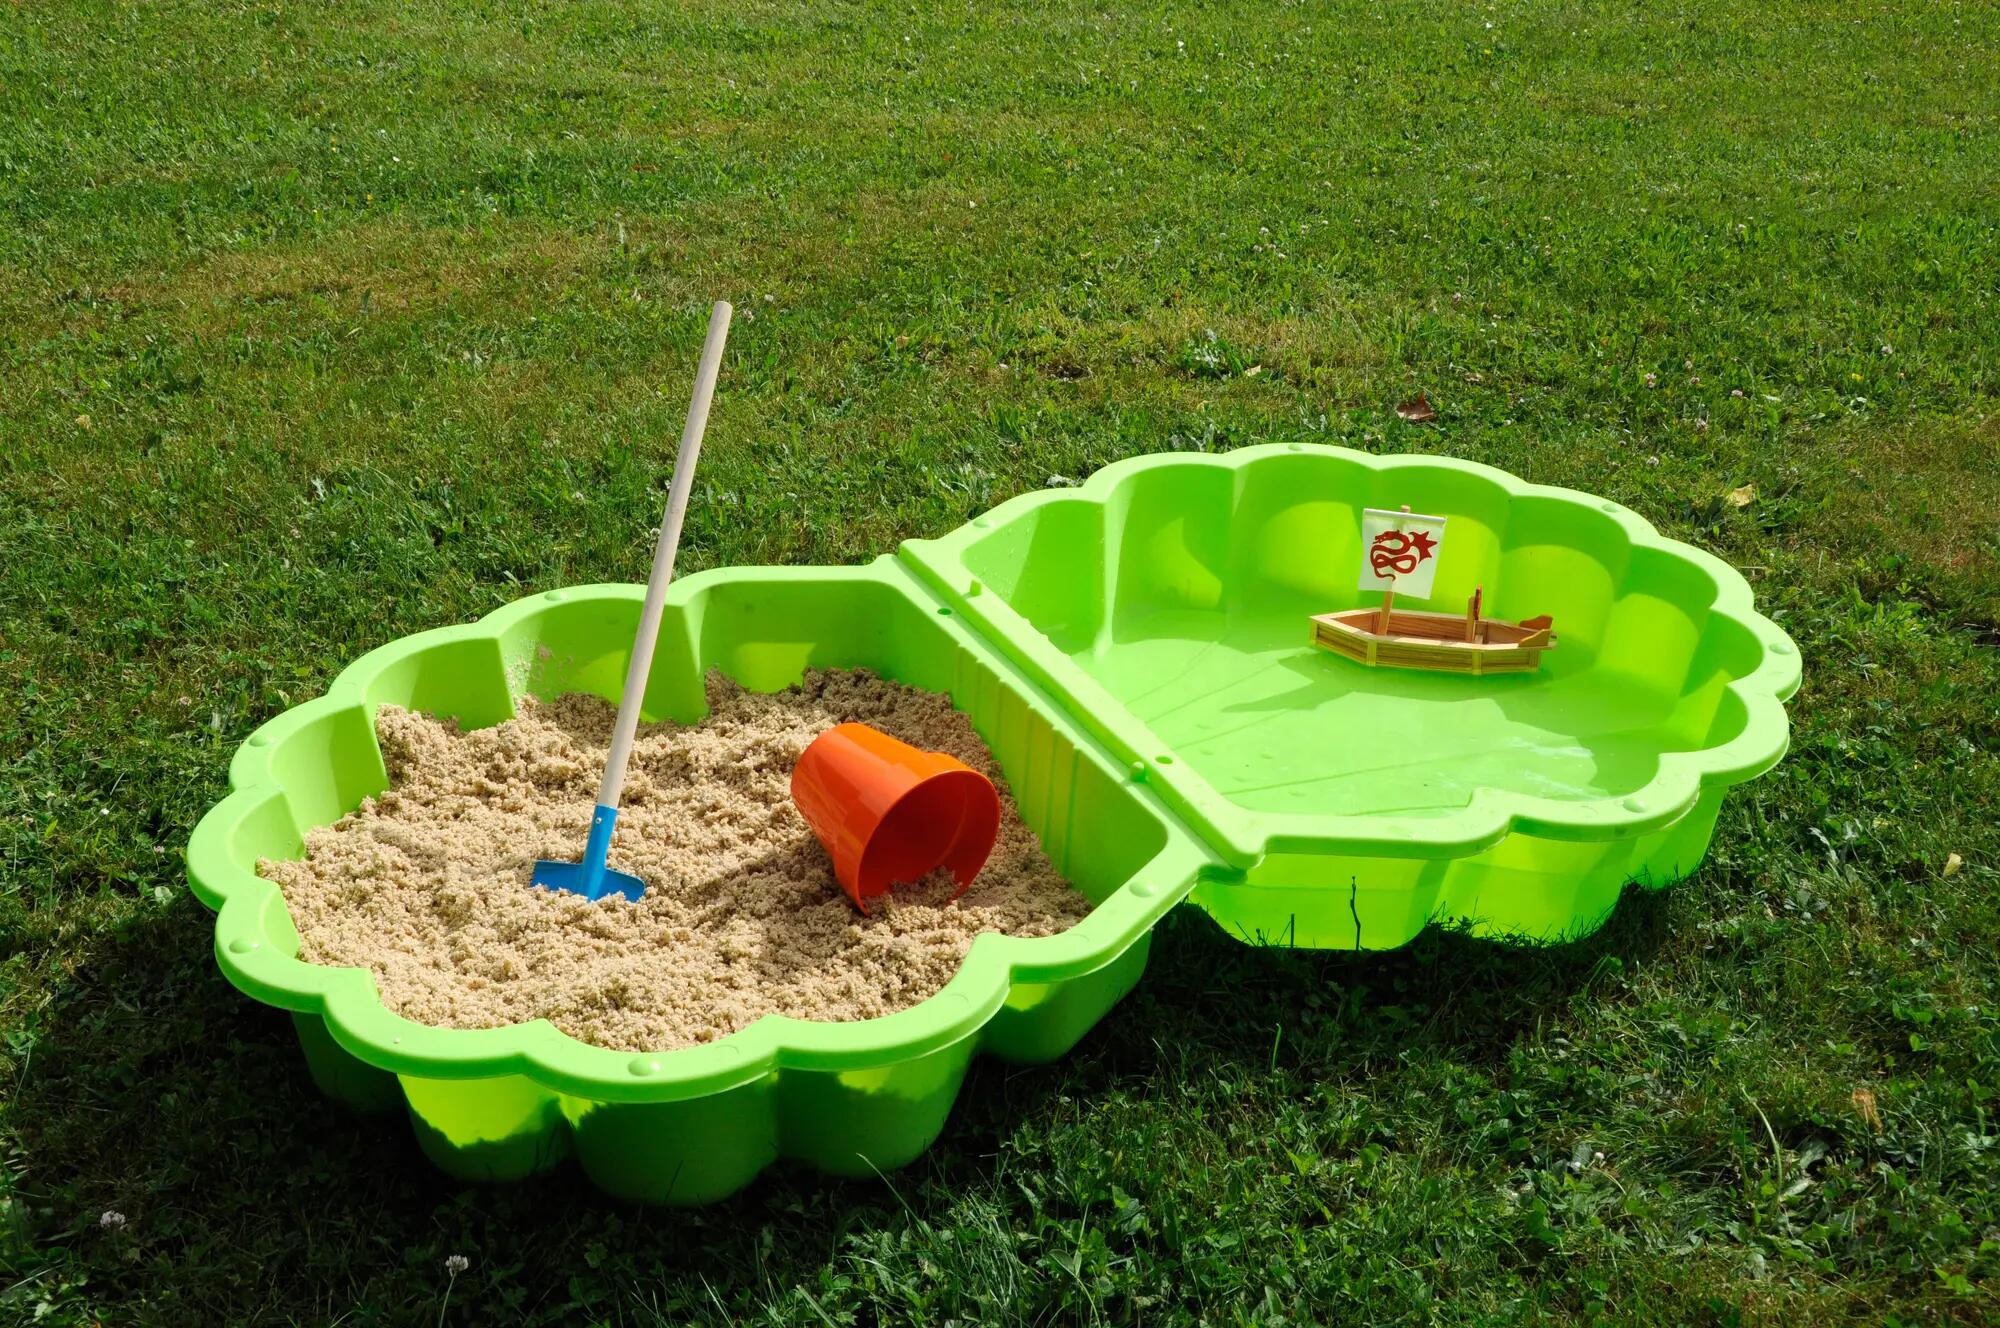 Un bac à sable au jardin pour les enfants